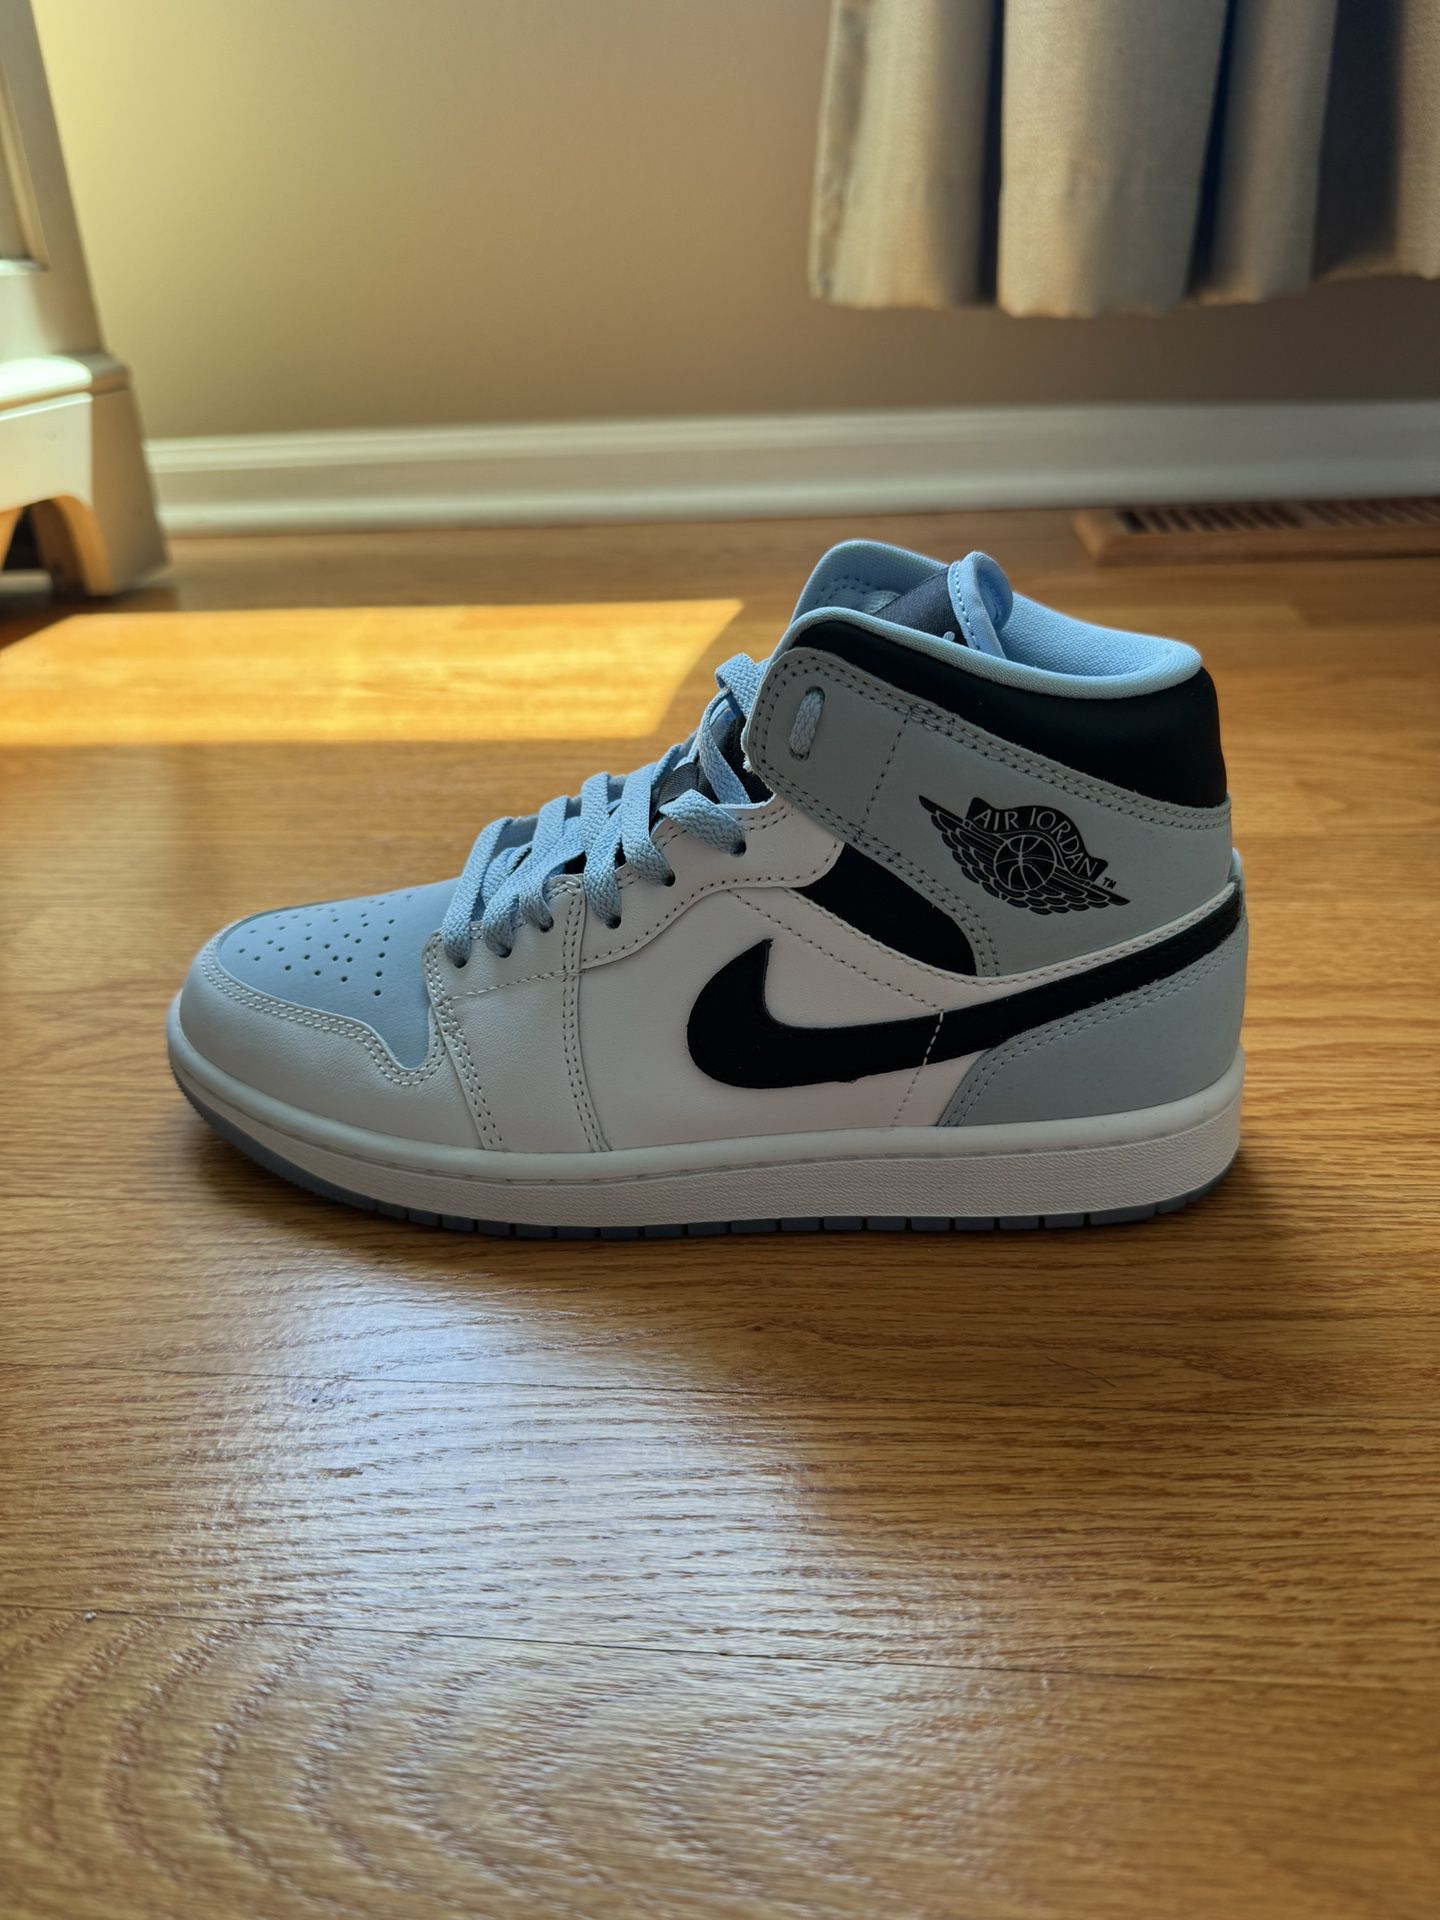 New Nike Jordans